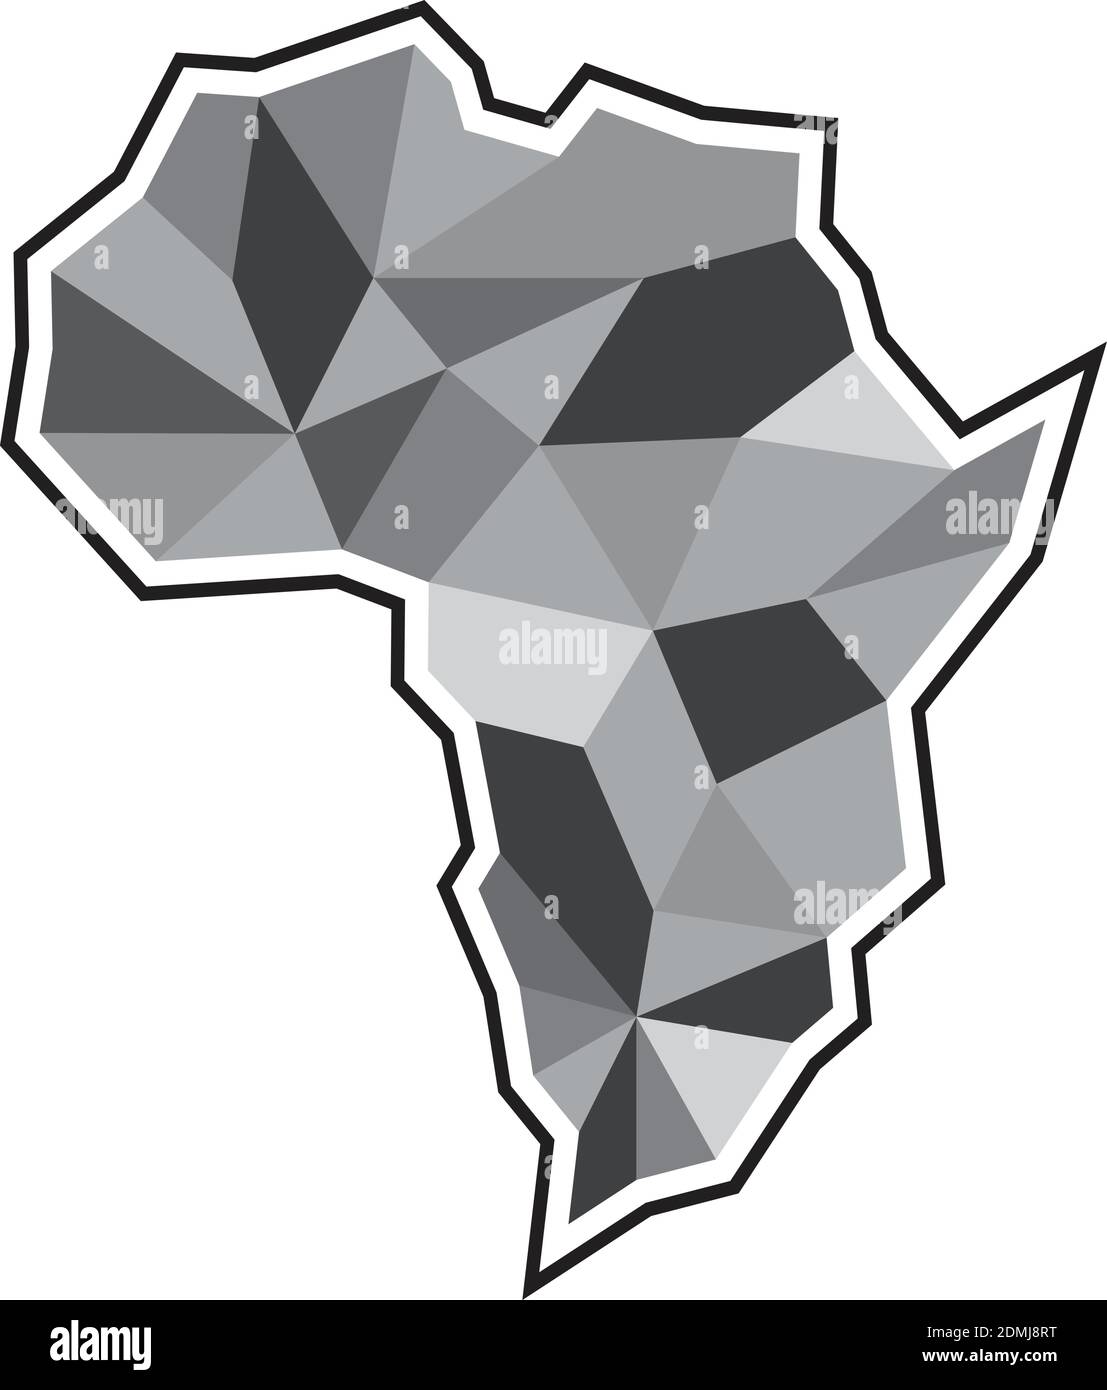 Icona della mappa africana creativa. Illustrazione astratta dell'icona del vettore di mappa africano per il web. Mappa geometrica africana. Illustrazione vettoriale EPS.8 EPS.10 Illustrazione Vettoriale